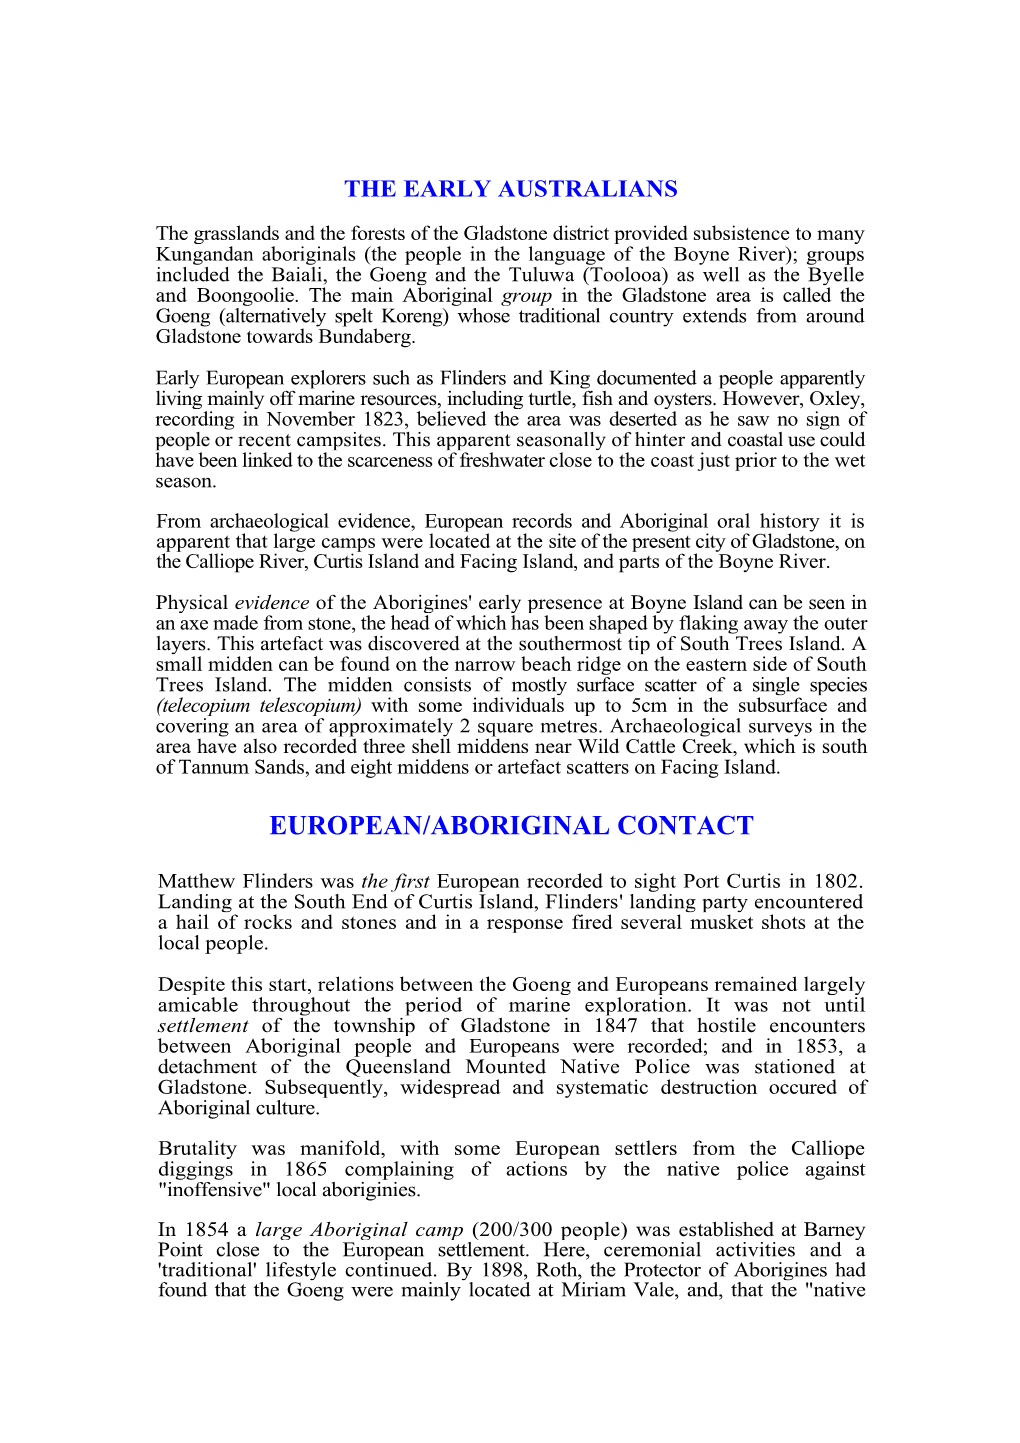 European/Aboriginal Contact